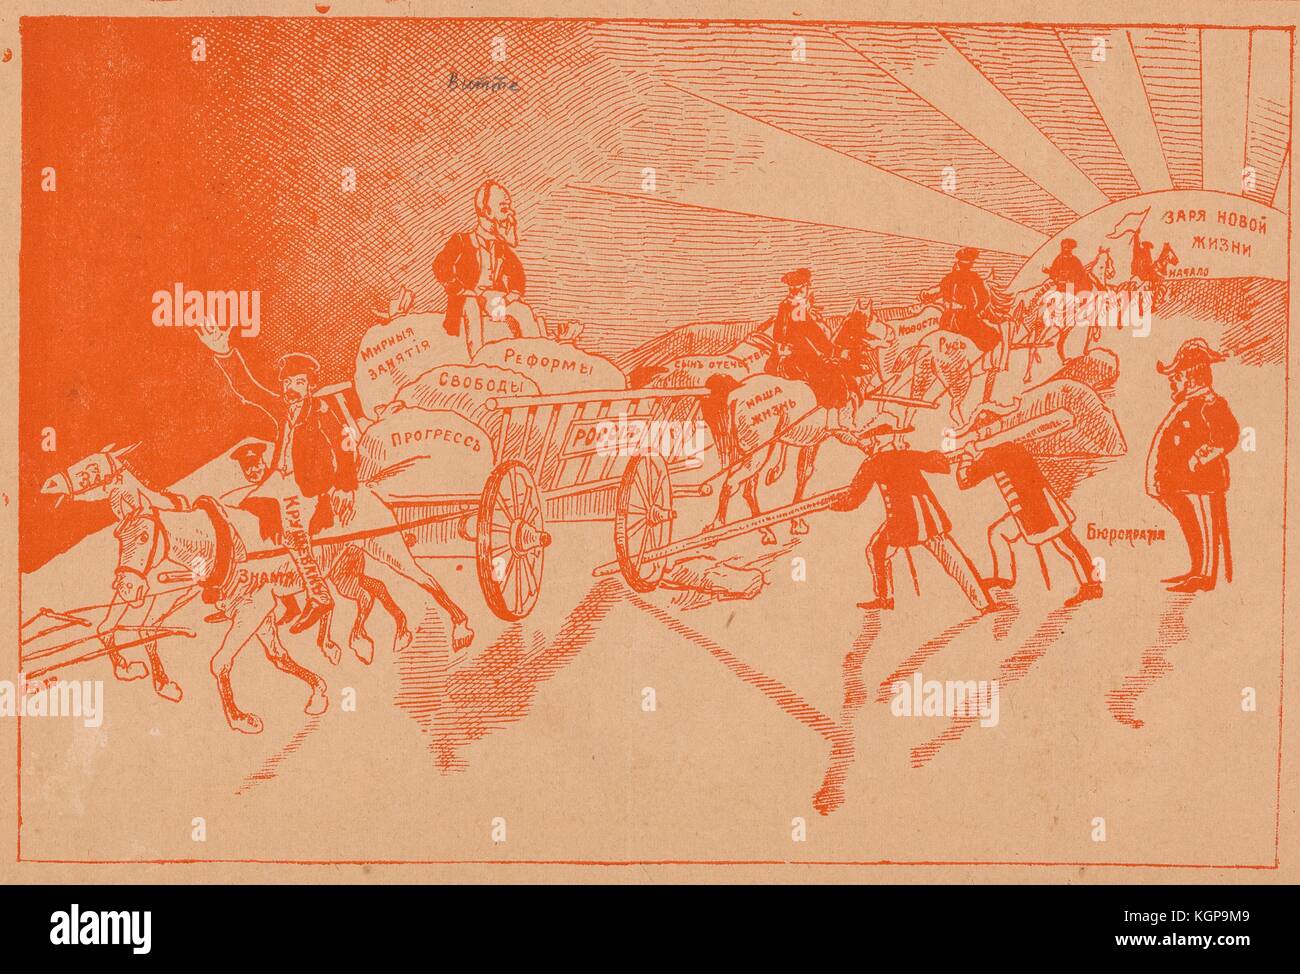 Caricature du journal satirique russe Nagaechka (Little Whip) représentant un chariot avec « Russie » écrit sur lui portant des sacs qui disent « progrès », « formes », « liberté » et « activités pacifiques » avec le tsar Nicholas II assis sur le dessus, tiré vers le soleil, ce qui dit "le commencement d'une nouvelle vie", alors que certains chevaux sont faits pour tirer la trémie loin du soleil, et les soldats essaient d'arrêter la trémie en mettant un gros bâton à travers l'une des roues; Les chevaux tirant la charrette vers le soleil ont des expressions associées à la culture russe traditionnelle comme 'son de la patrie', 'news' Banque D'Images